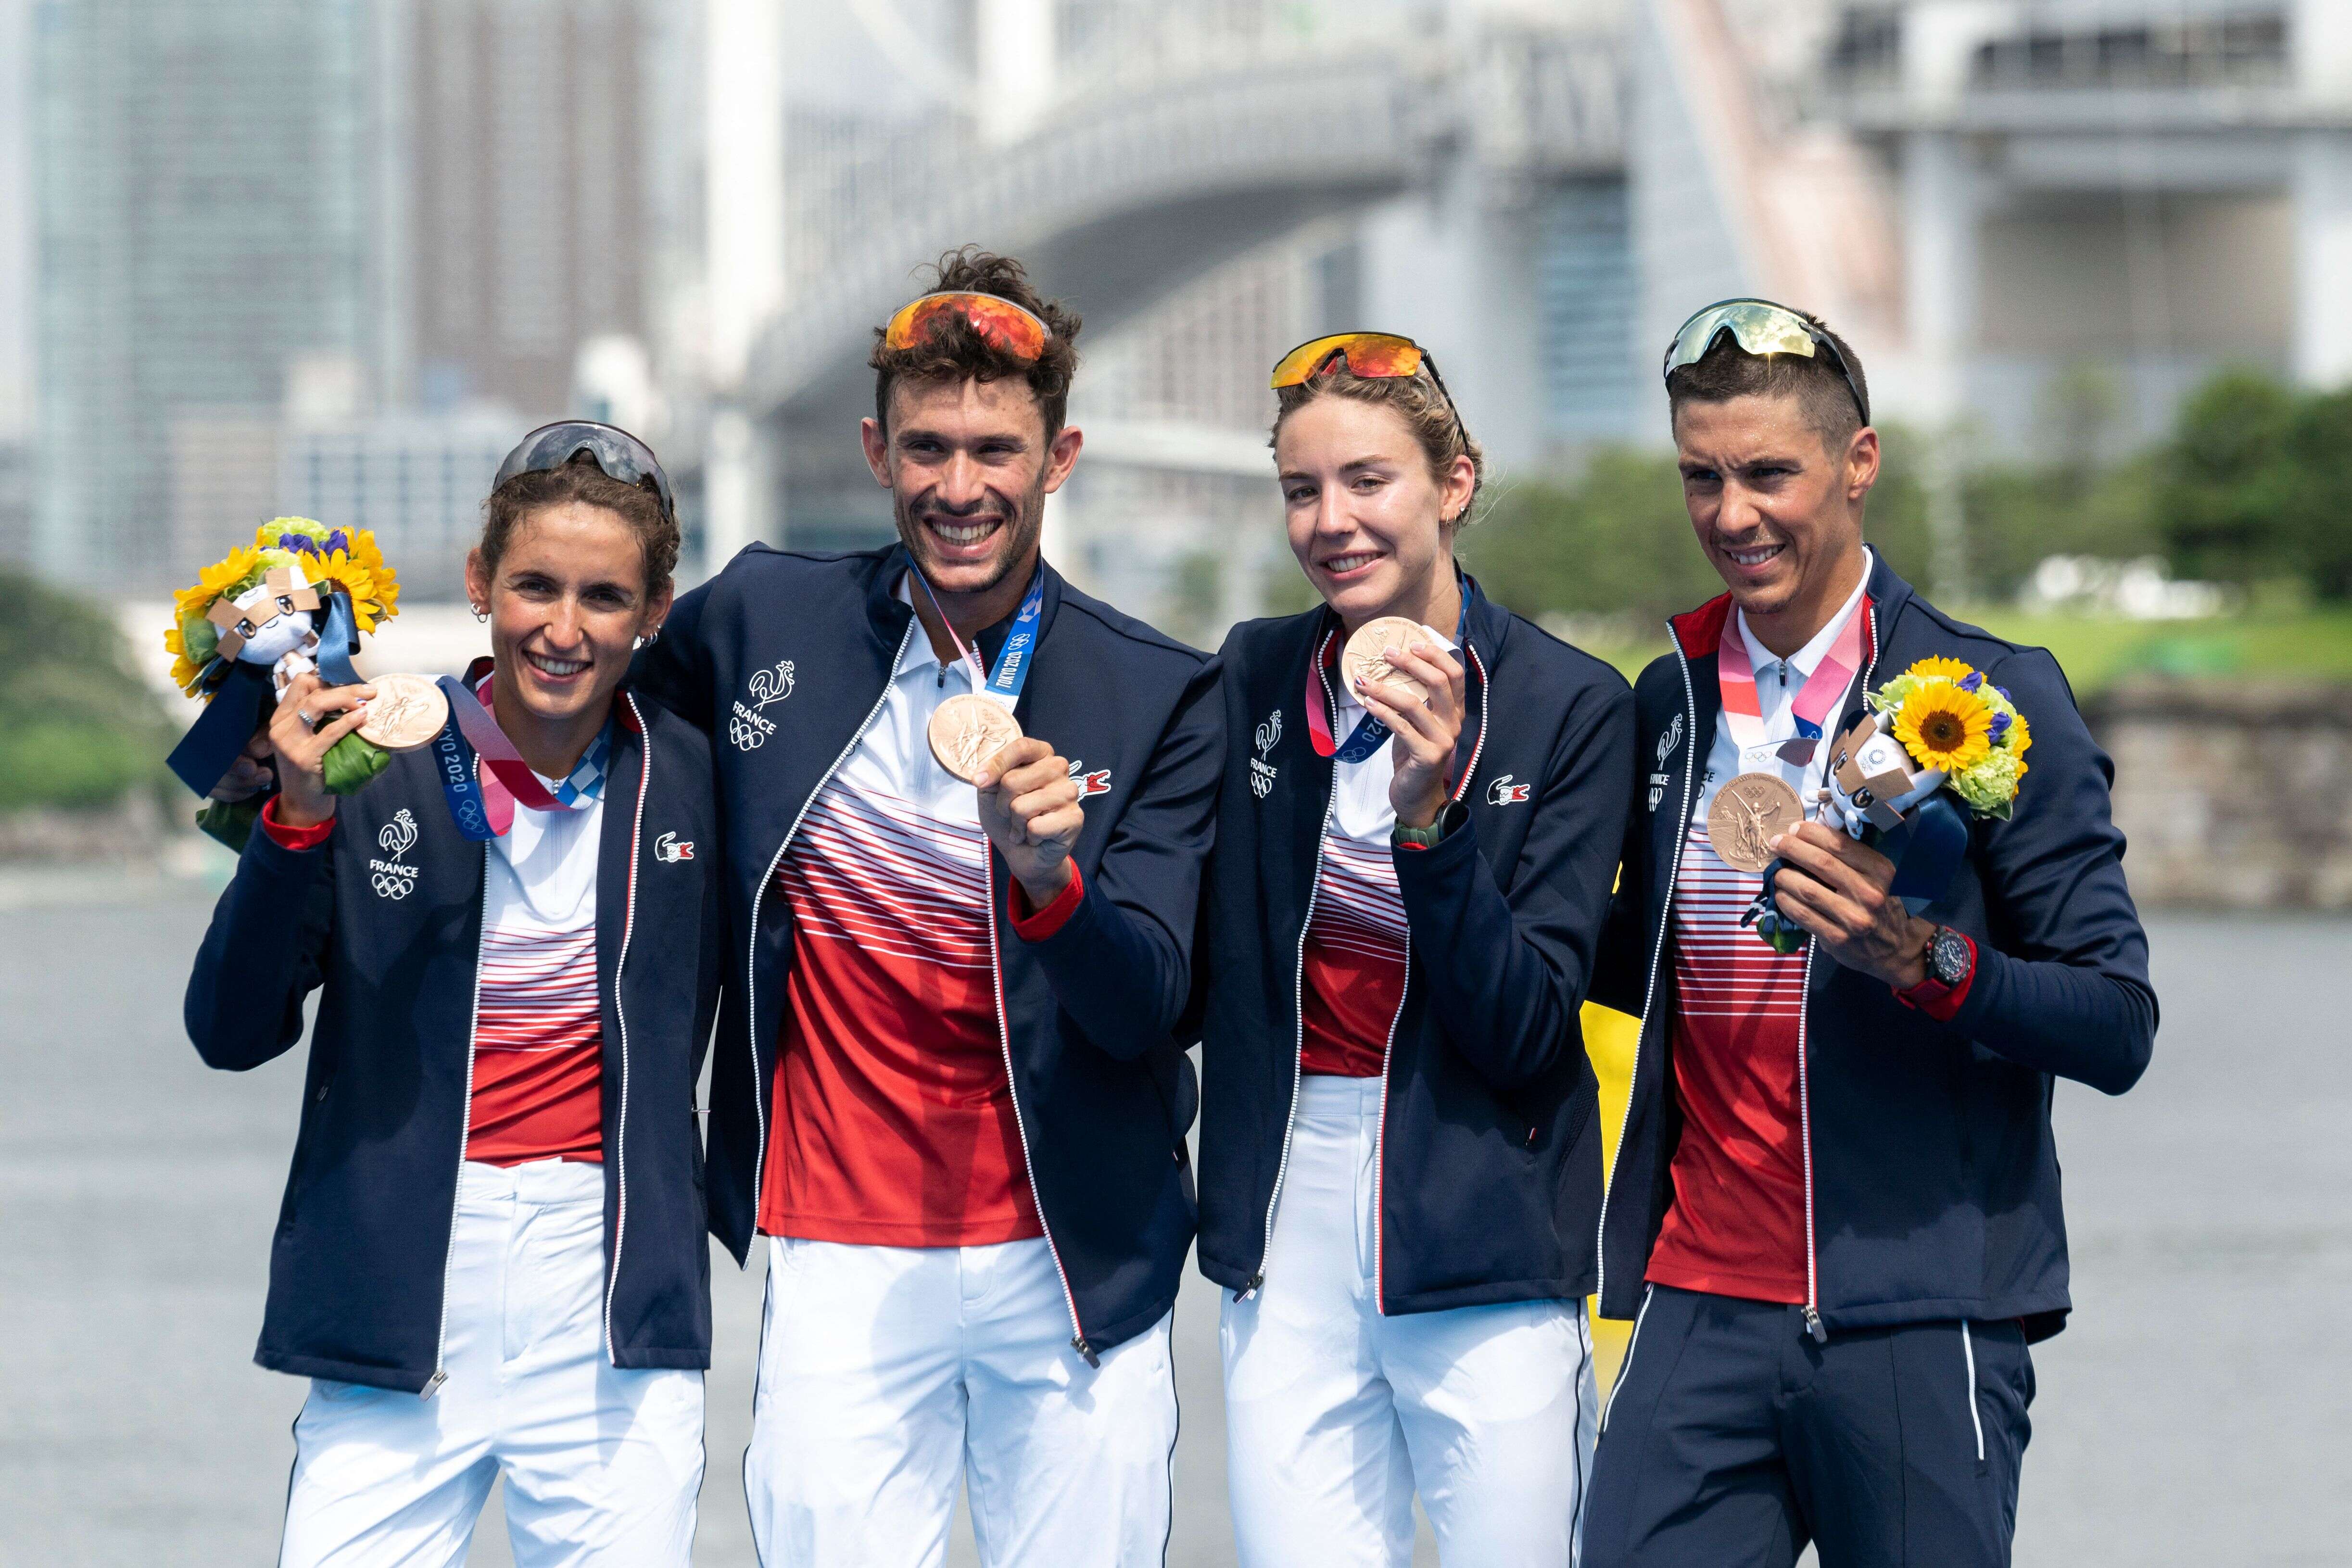 Aux JO de Tokyo, le relais mixte de triathlon a rapporté une 14e médaille à l'équipe de France. C'est aussi la première médaille olympique française de l'histoire de cette discipline.